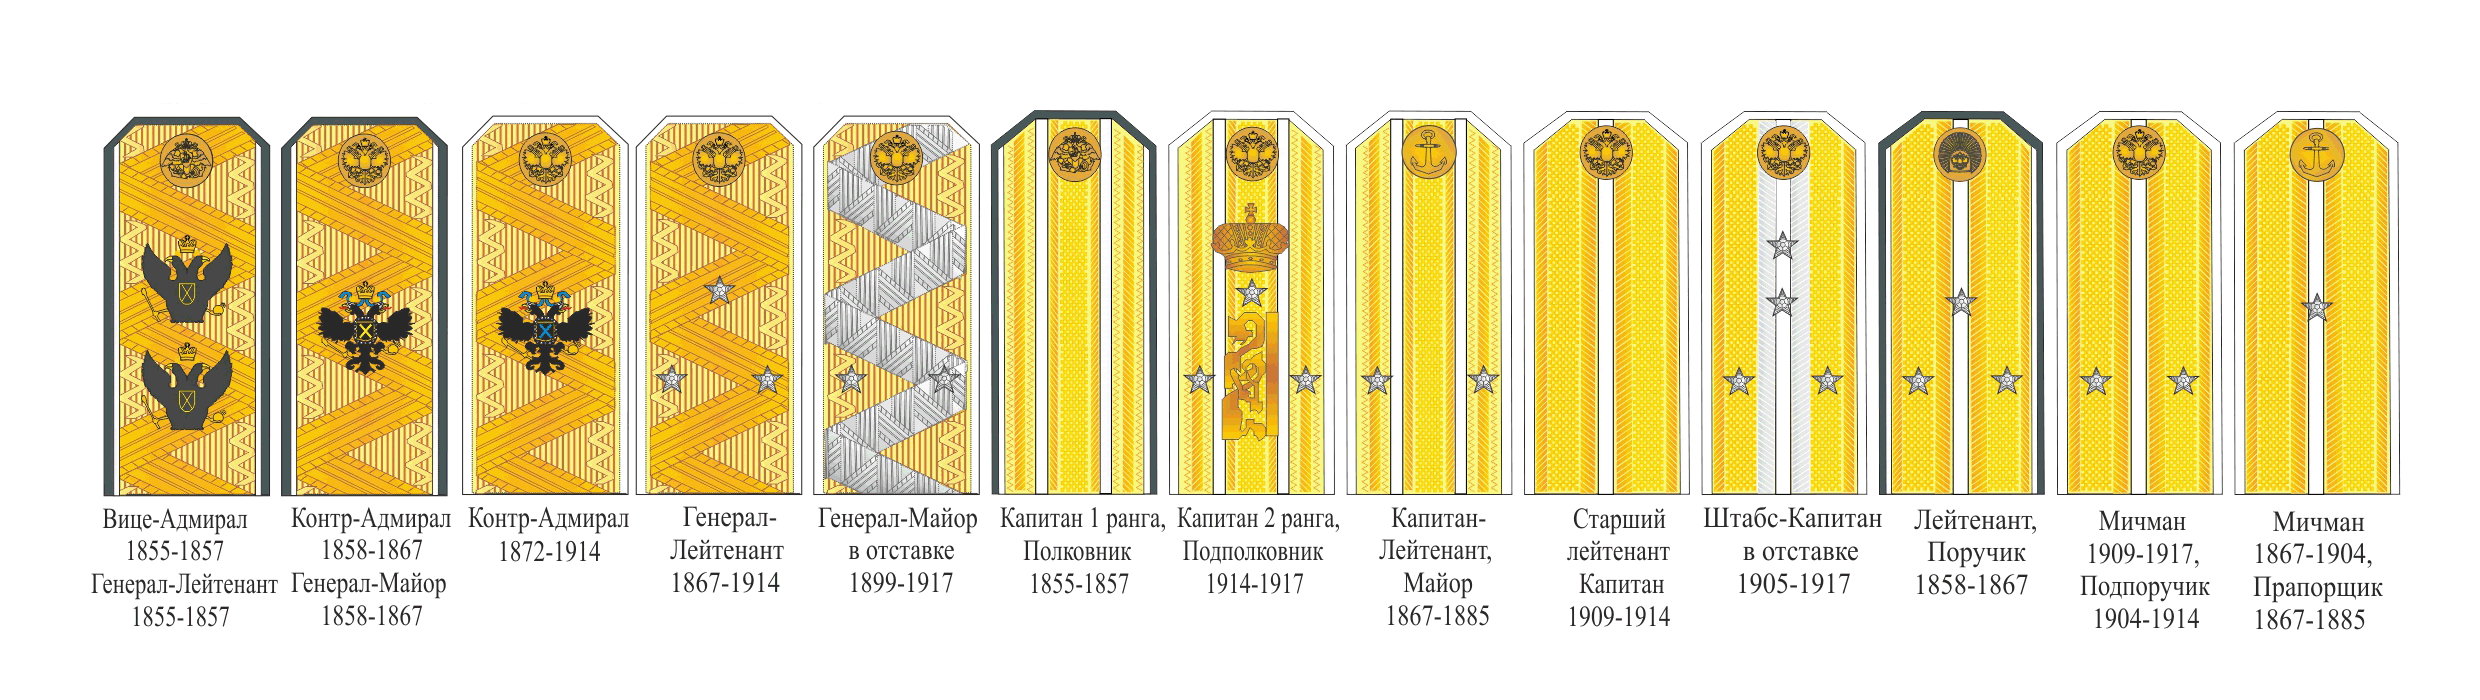 Погоны и звания в царской армии до 1917 года